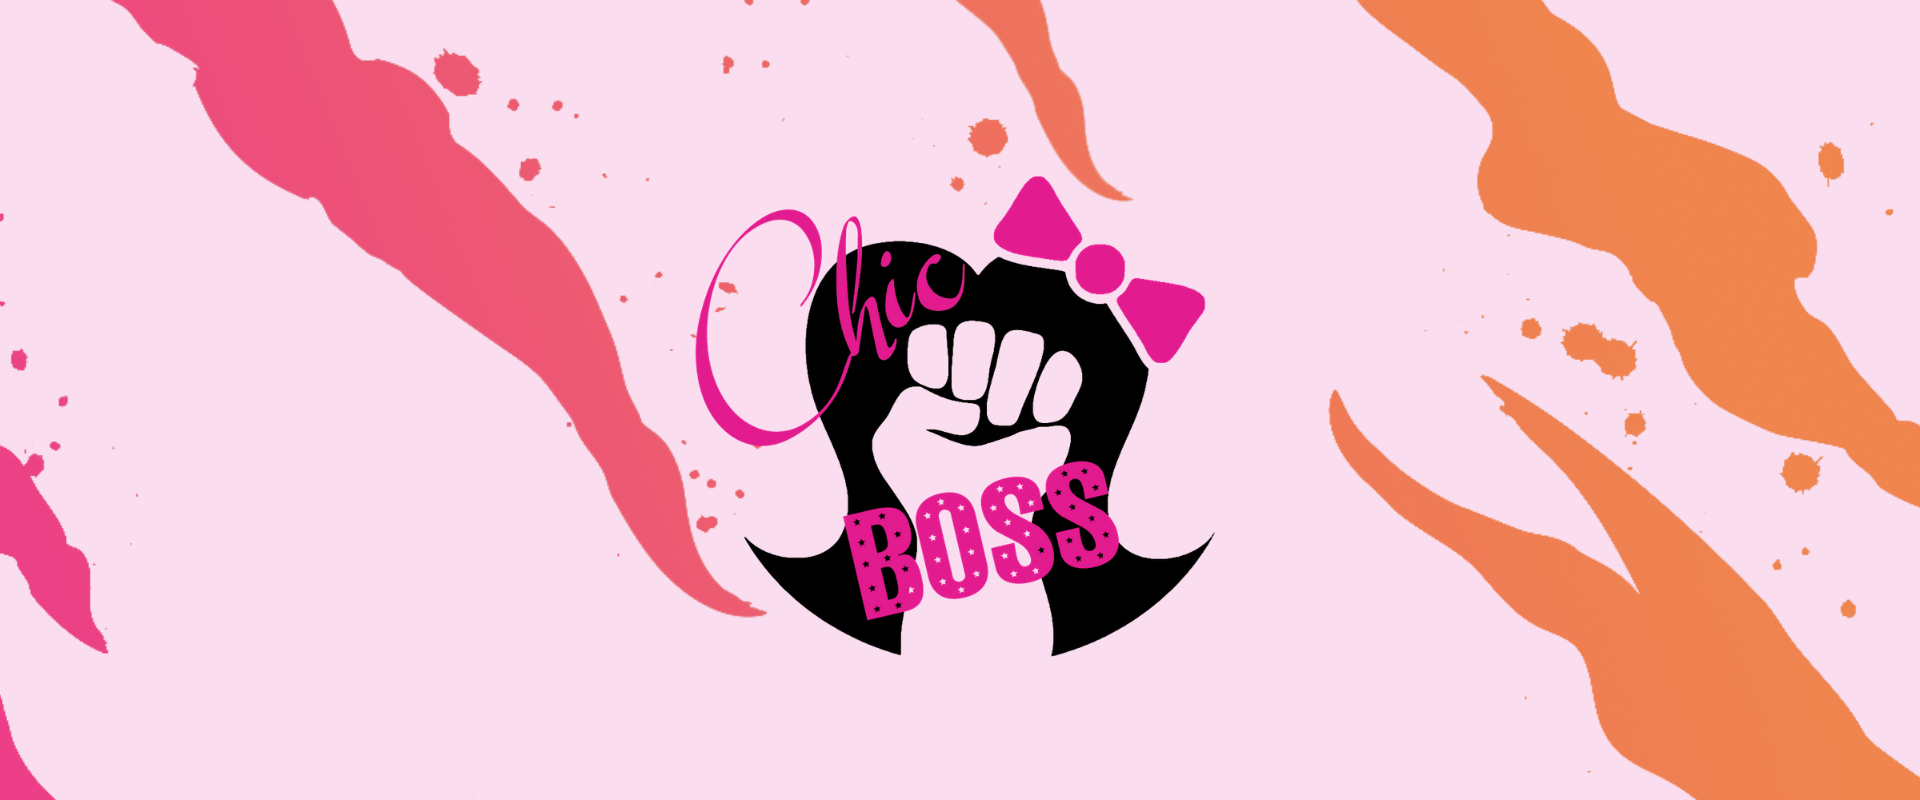 Boss Chics